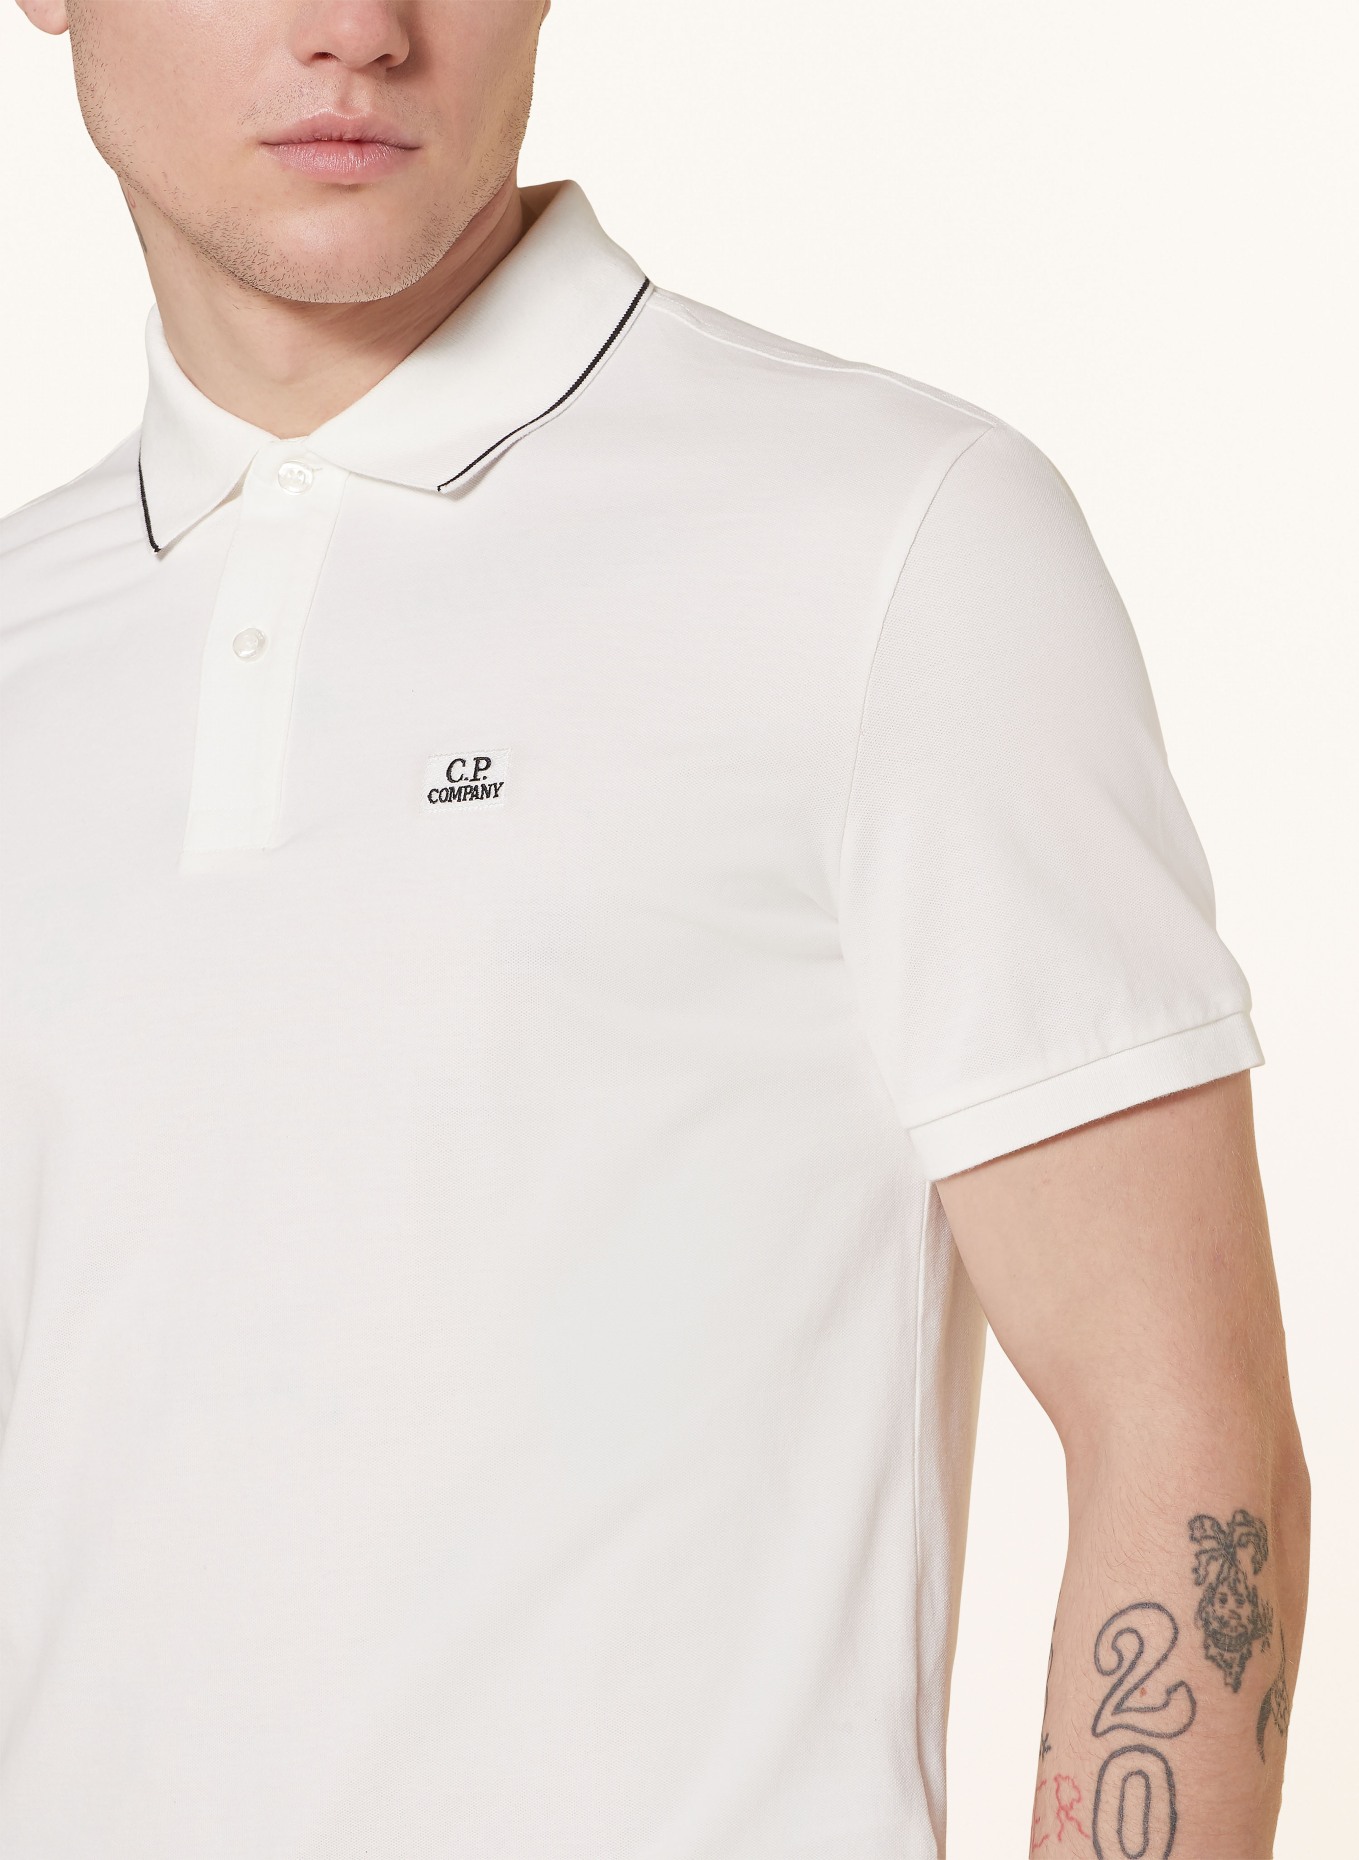 C.P. COMPANY Piqué polo shirt regular fit, Color: WHITE (Image 4)